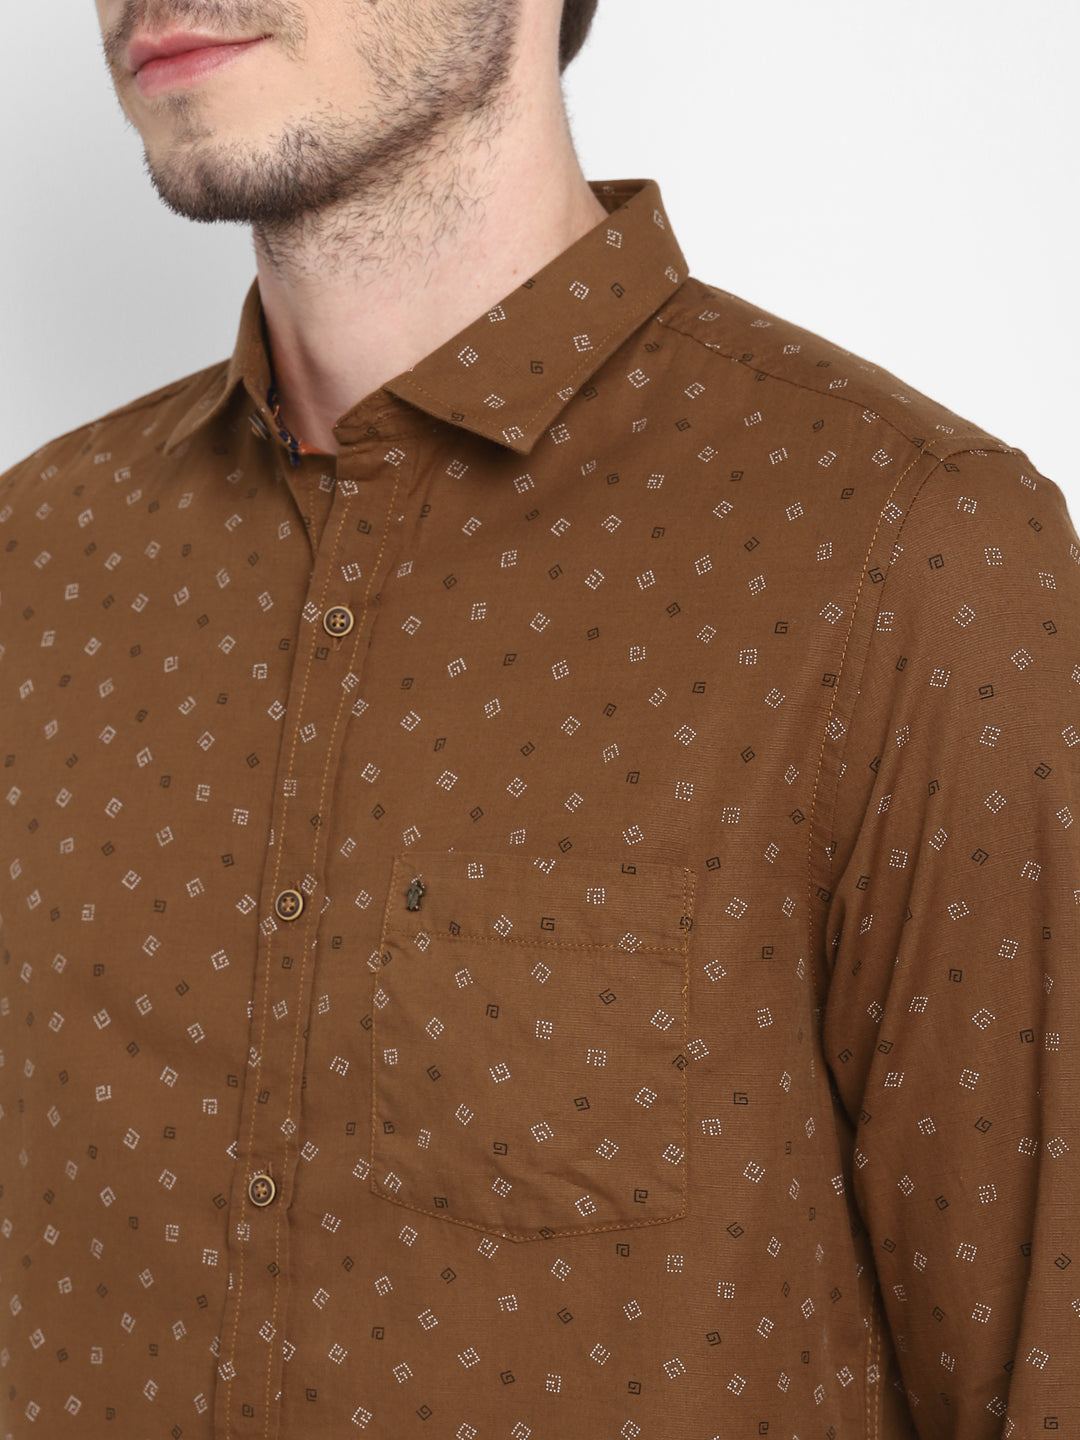 Printed Brown Slim Fit Causal Shirt